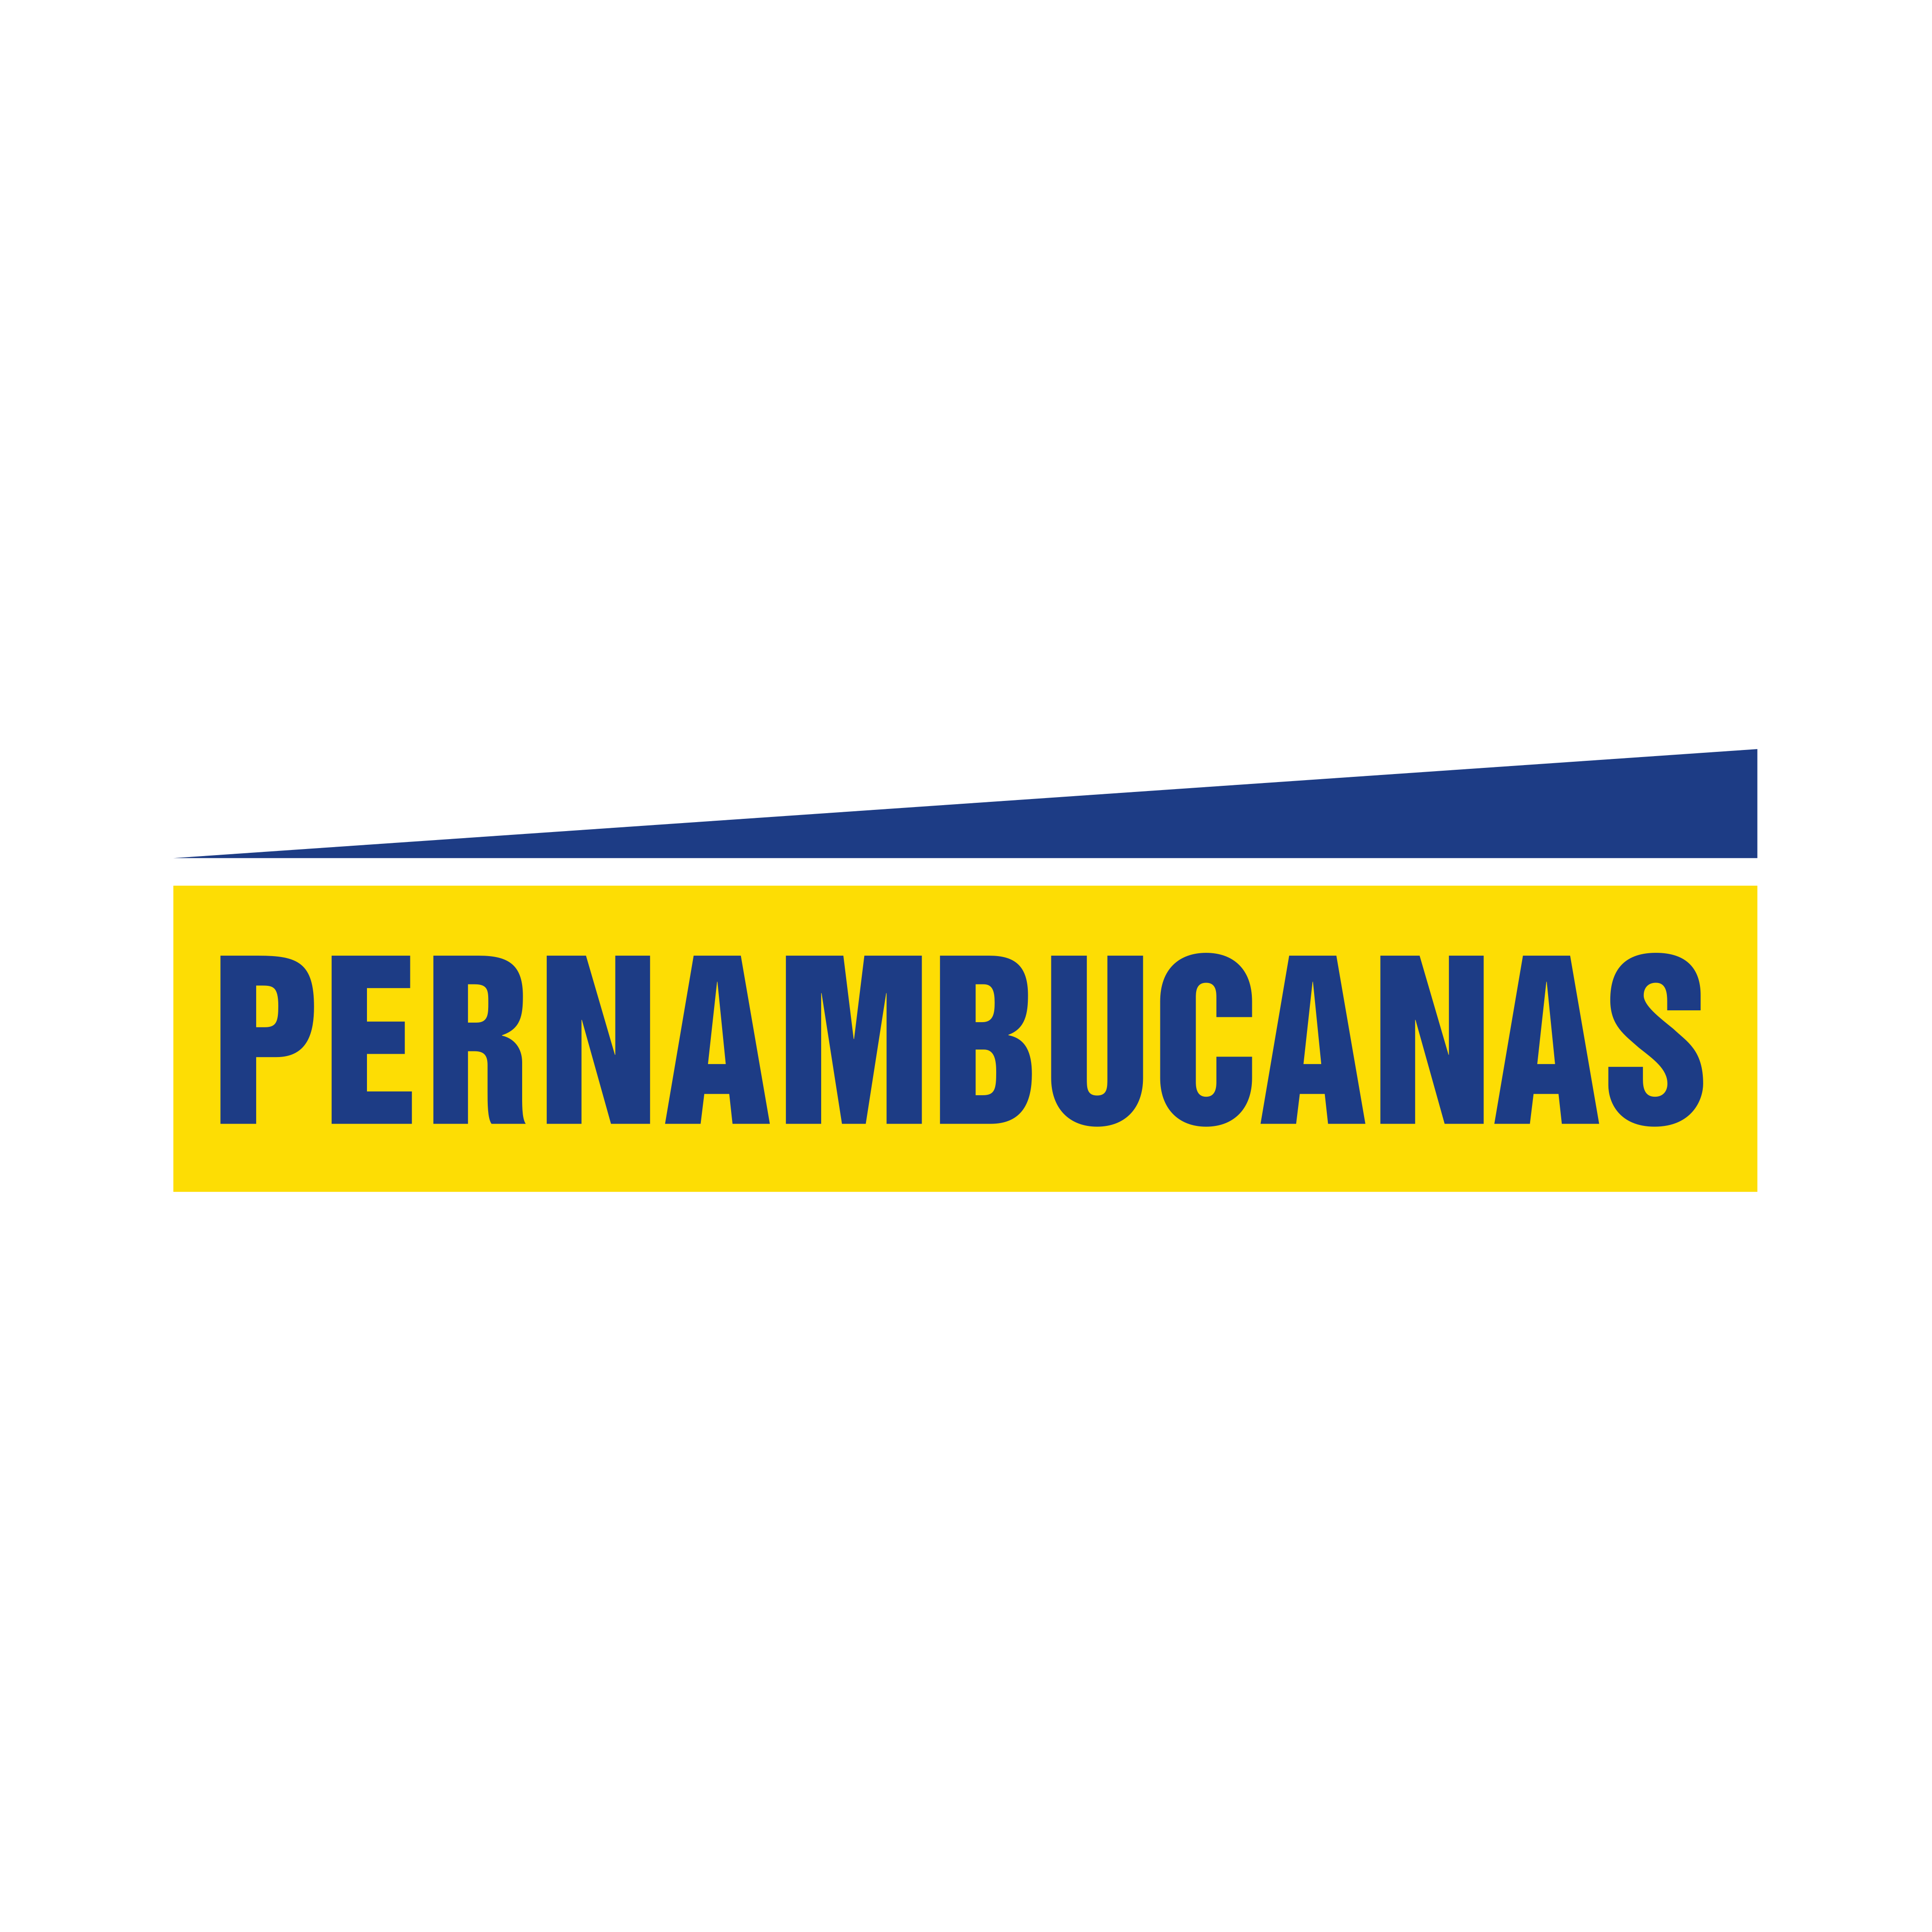 Pernambucanas Logo PNG.